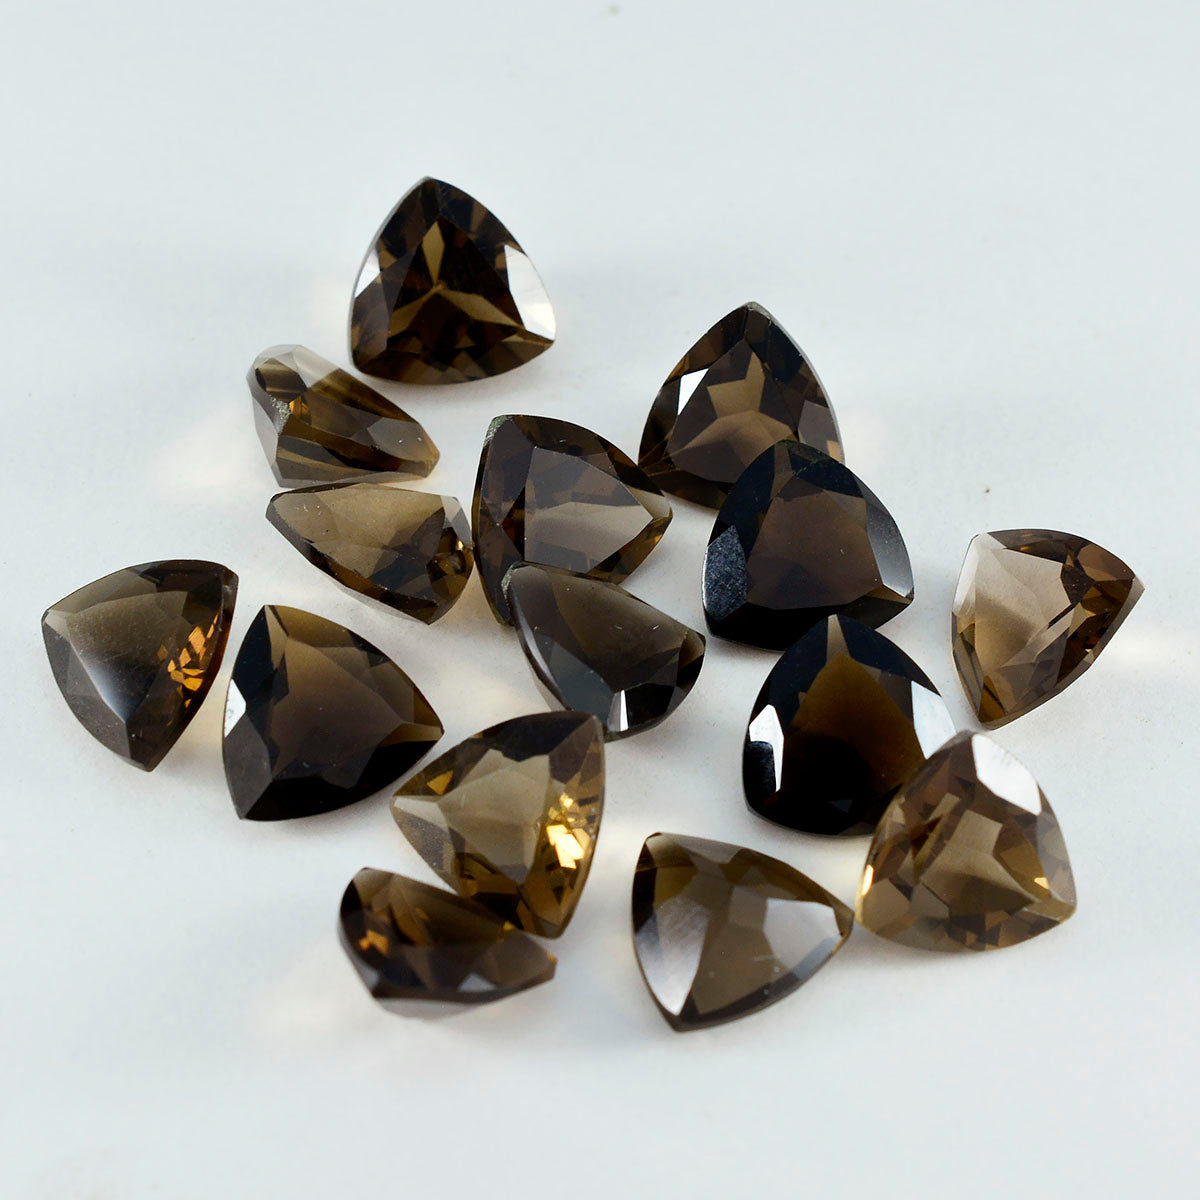 Riyogems 1pc véritable quartz fumé brun à facettes 6x6mm forme trillion a + gemme de qualité